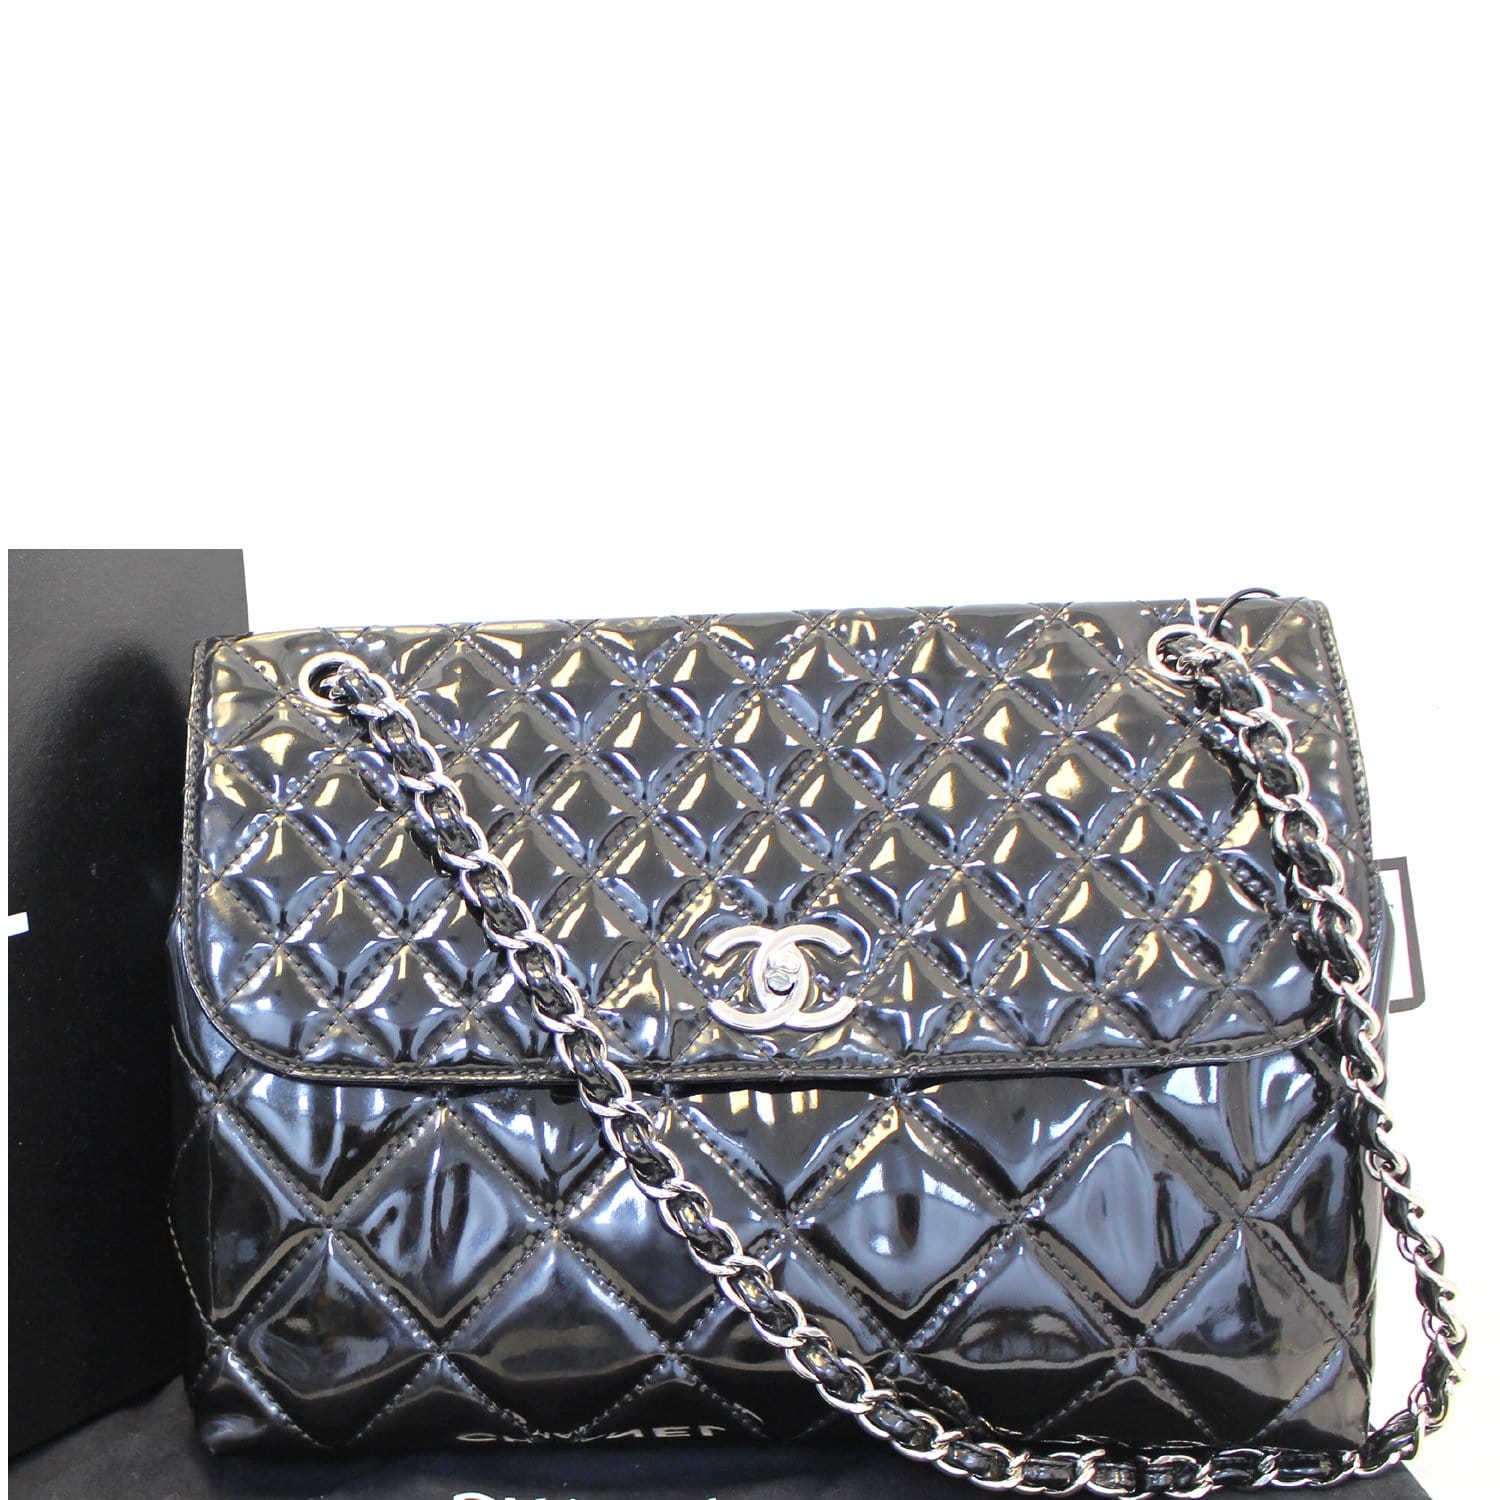 CHANEL, Bags, Chanel Sac Rabat Handbag